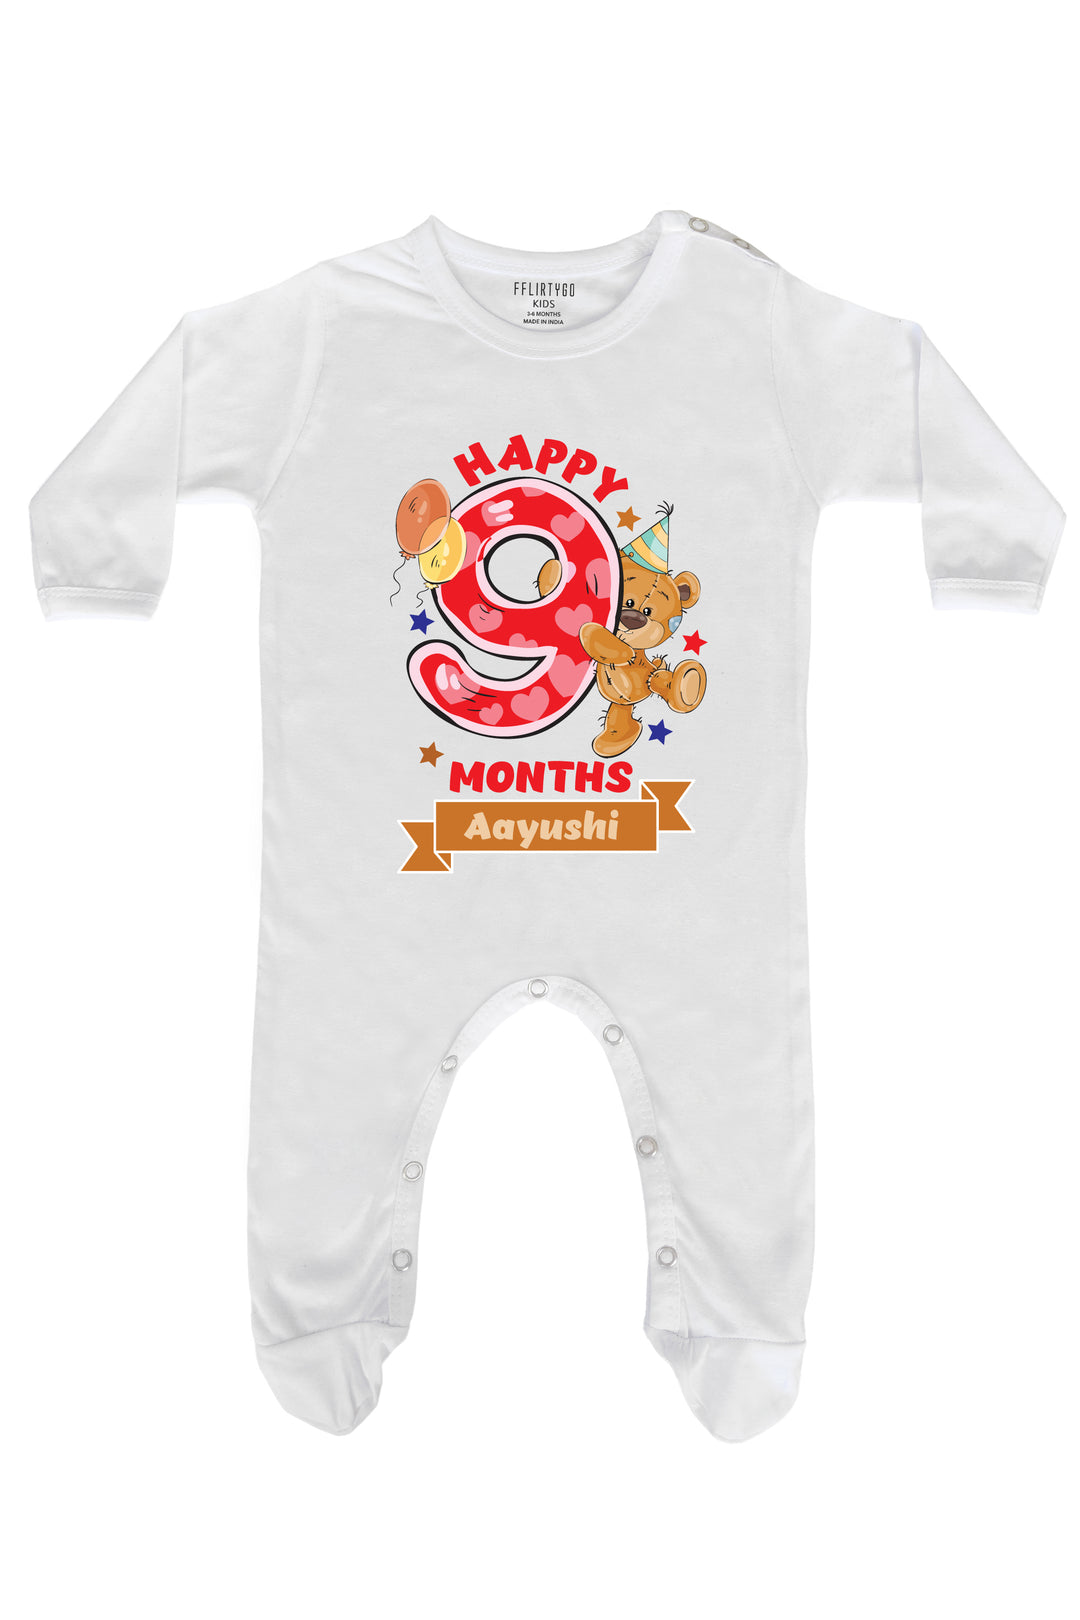 Happy Nine Months Milestone Baby Romper | Onesies w/ Custom Name